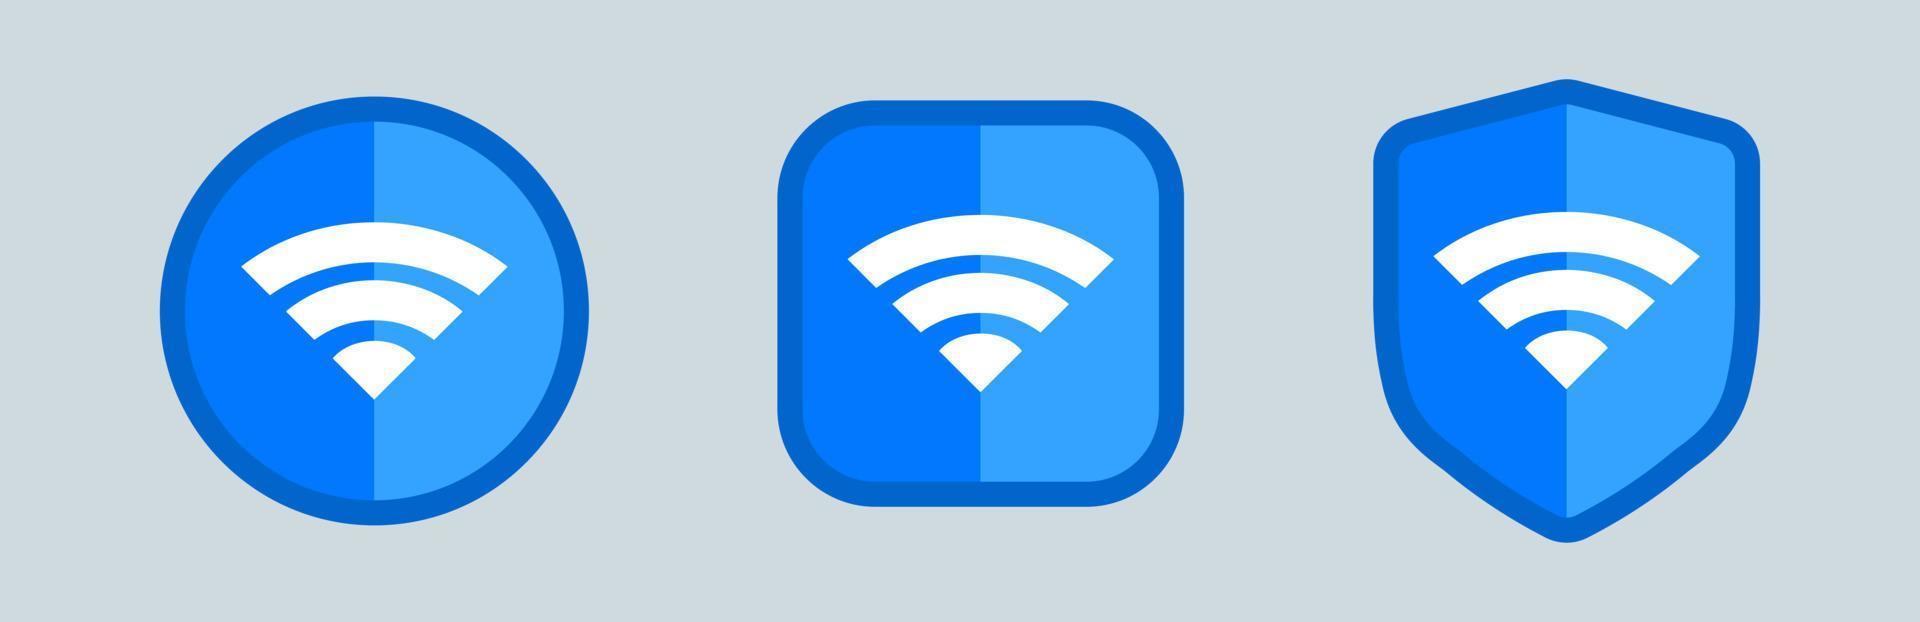 ícone sem fio e wifi ou sinal para acesso remoto à internet. conjunto de ícones de wifi azul diferente. vetor